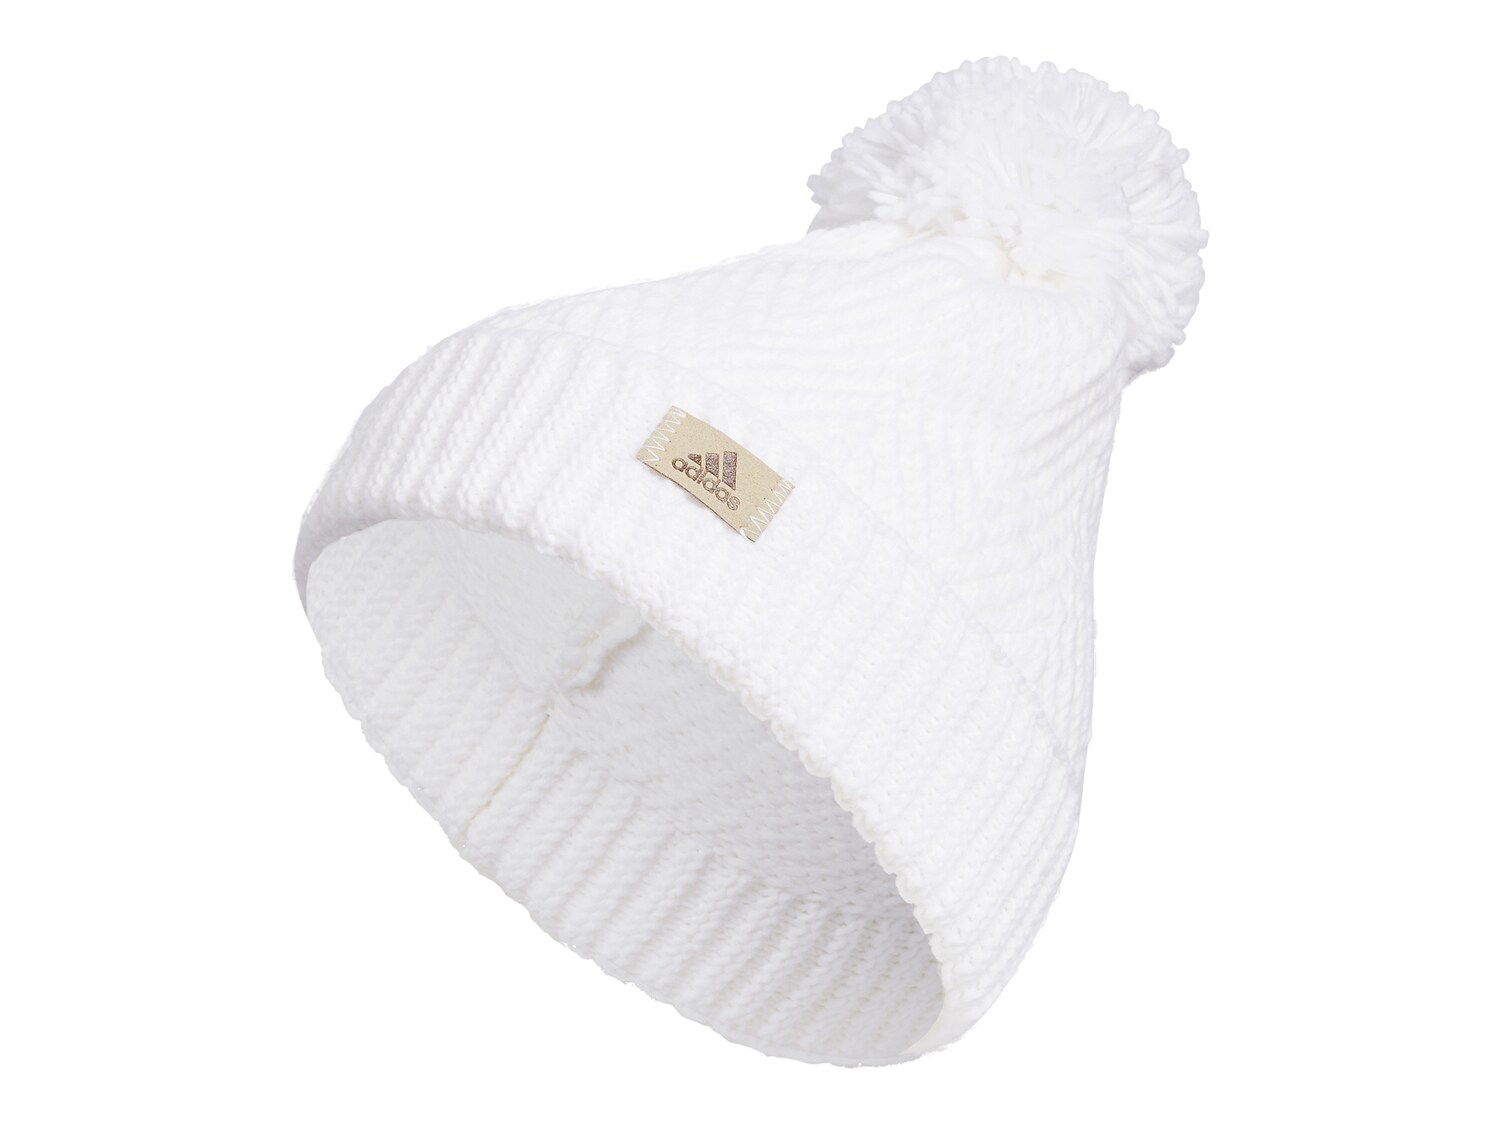 Шапка-бини Adidas, белый шапка бини с двойным меховым помпоном женские зимние шапки вязаная шерстяная шапка шапки шапки для женщин и девочек вязаная шапка с мехо